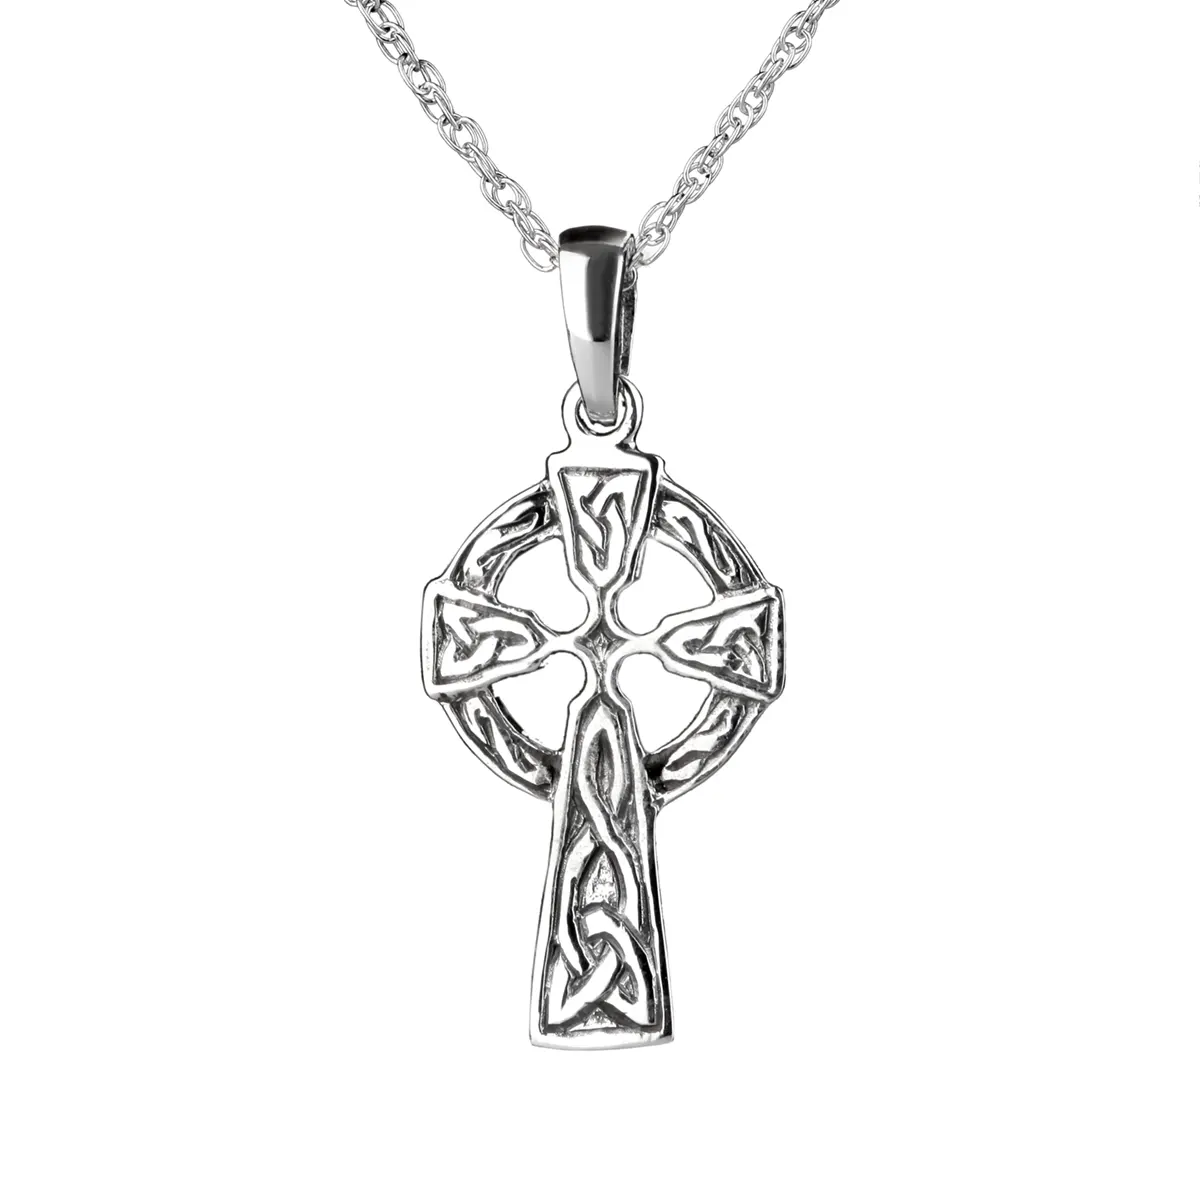 Keltisches Kreuz - Anhänger aus Sterling Silber - Handgefertigt in Schottland